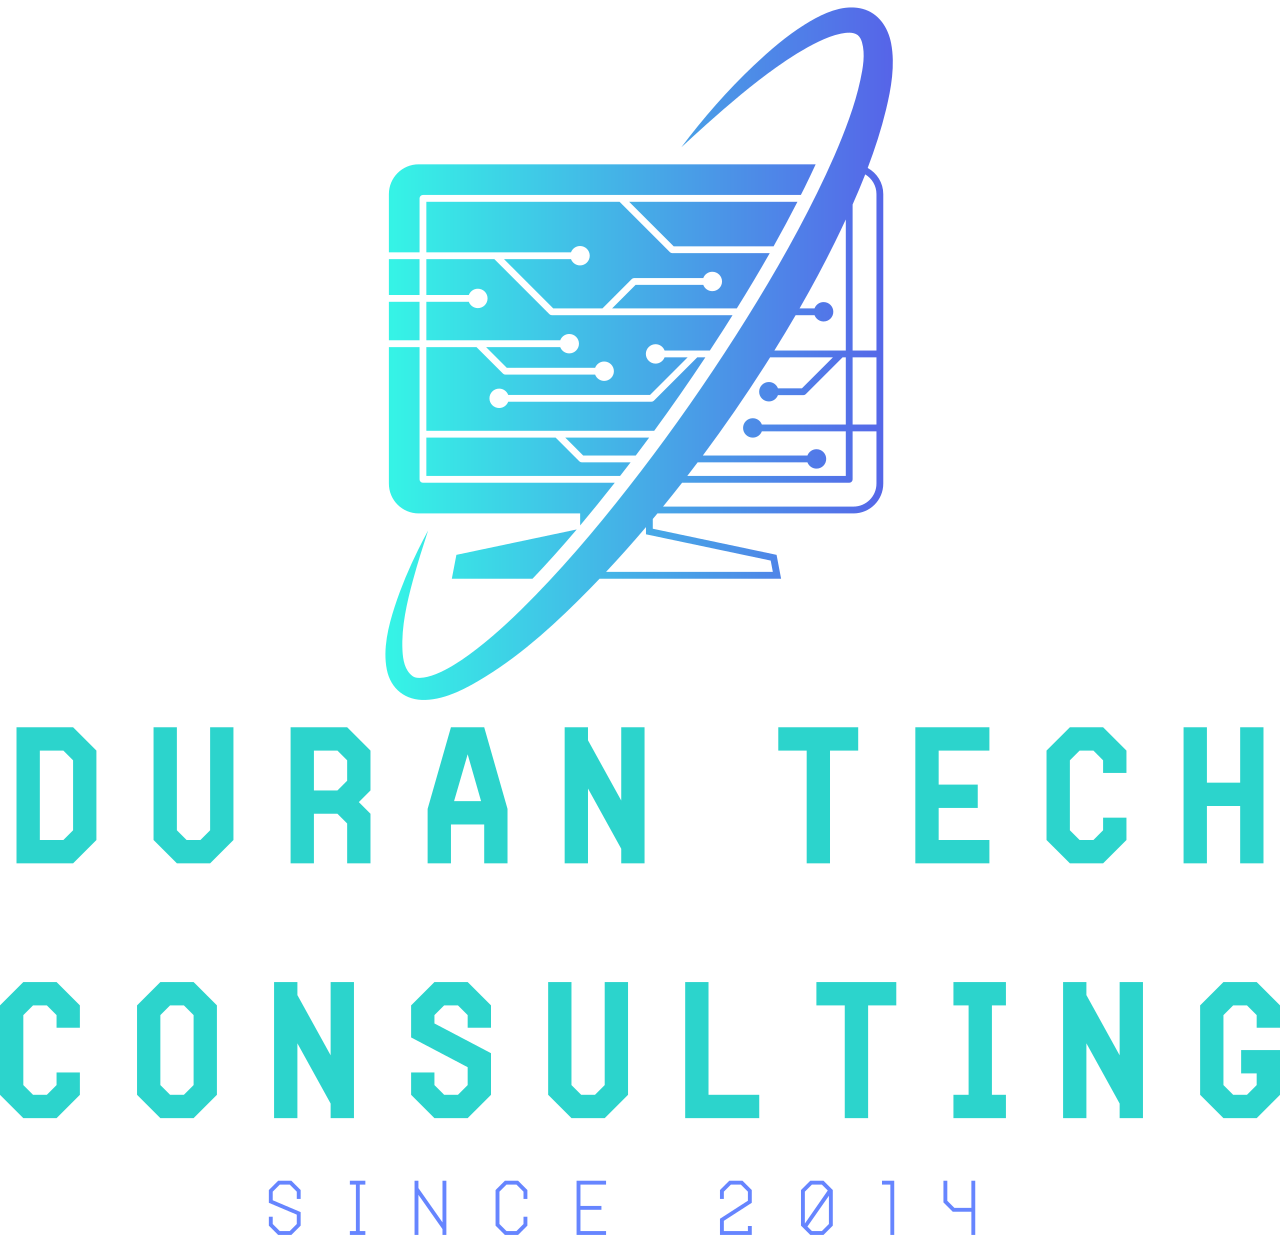 Duran Tech Consulting's logo